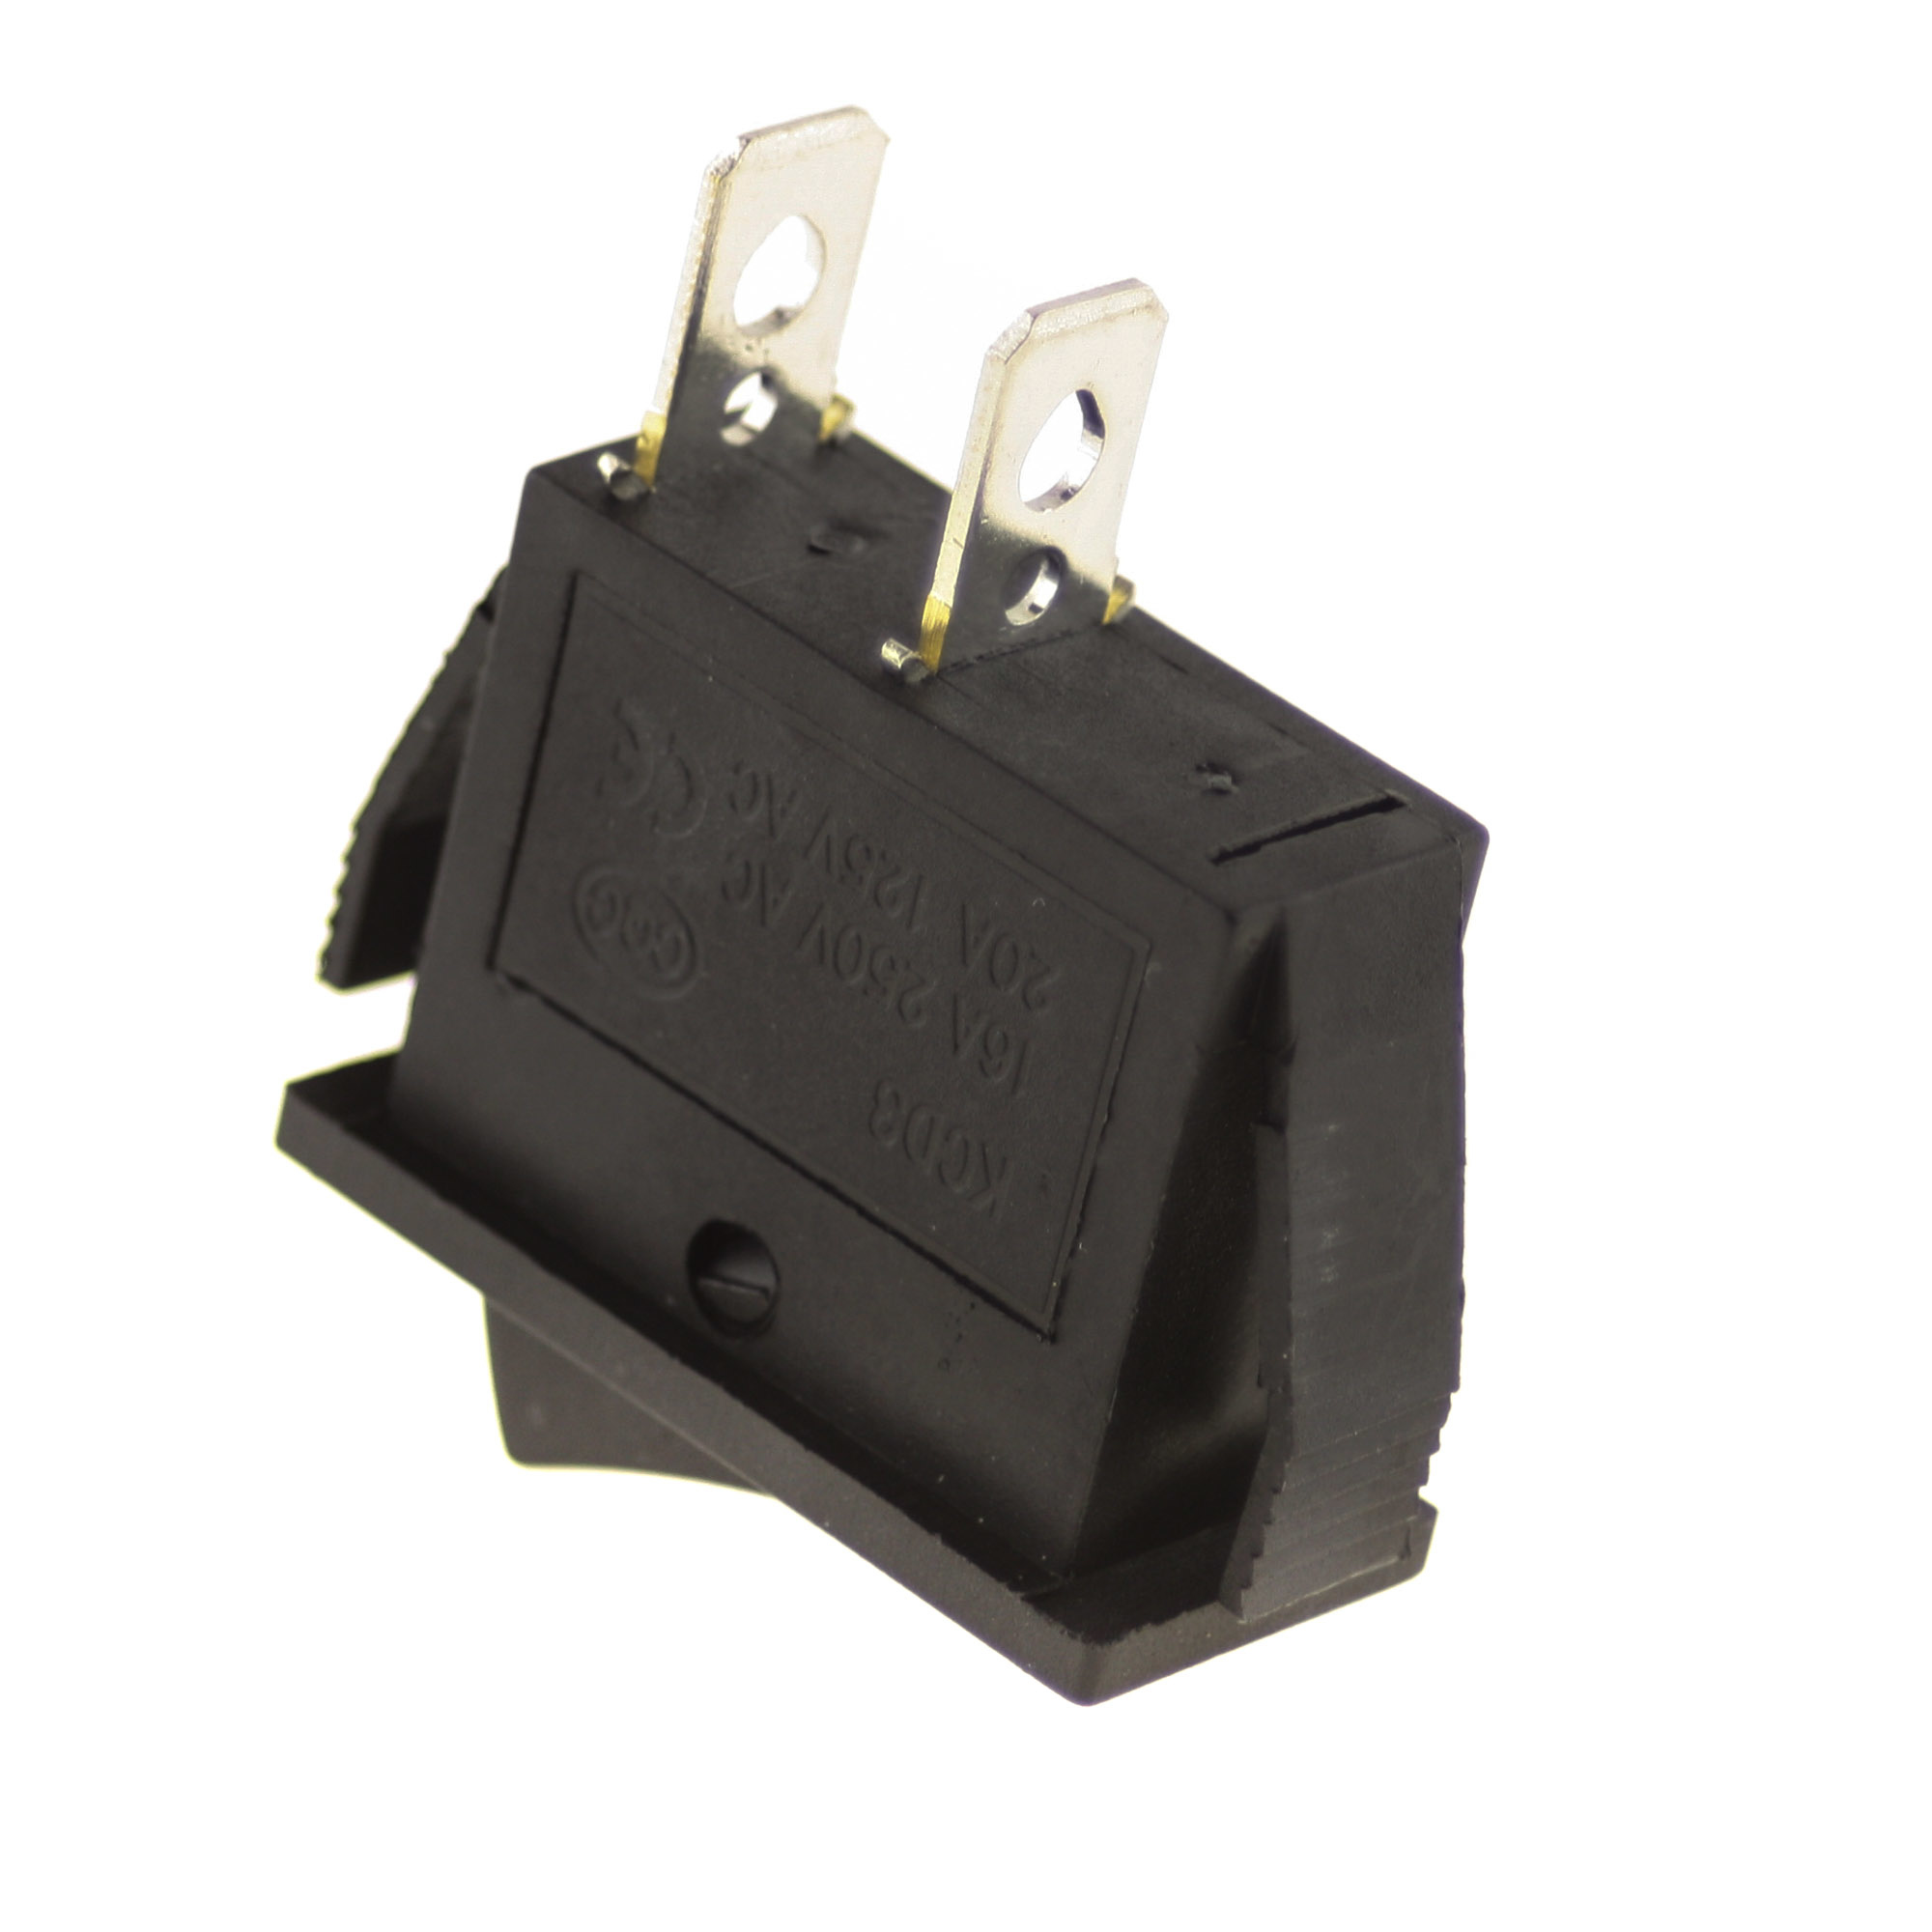 Switch I-0 250V 6A, 31x14mm, black - 5 pcs